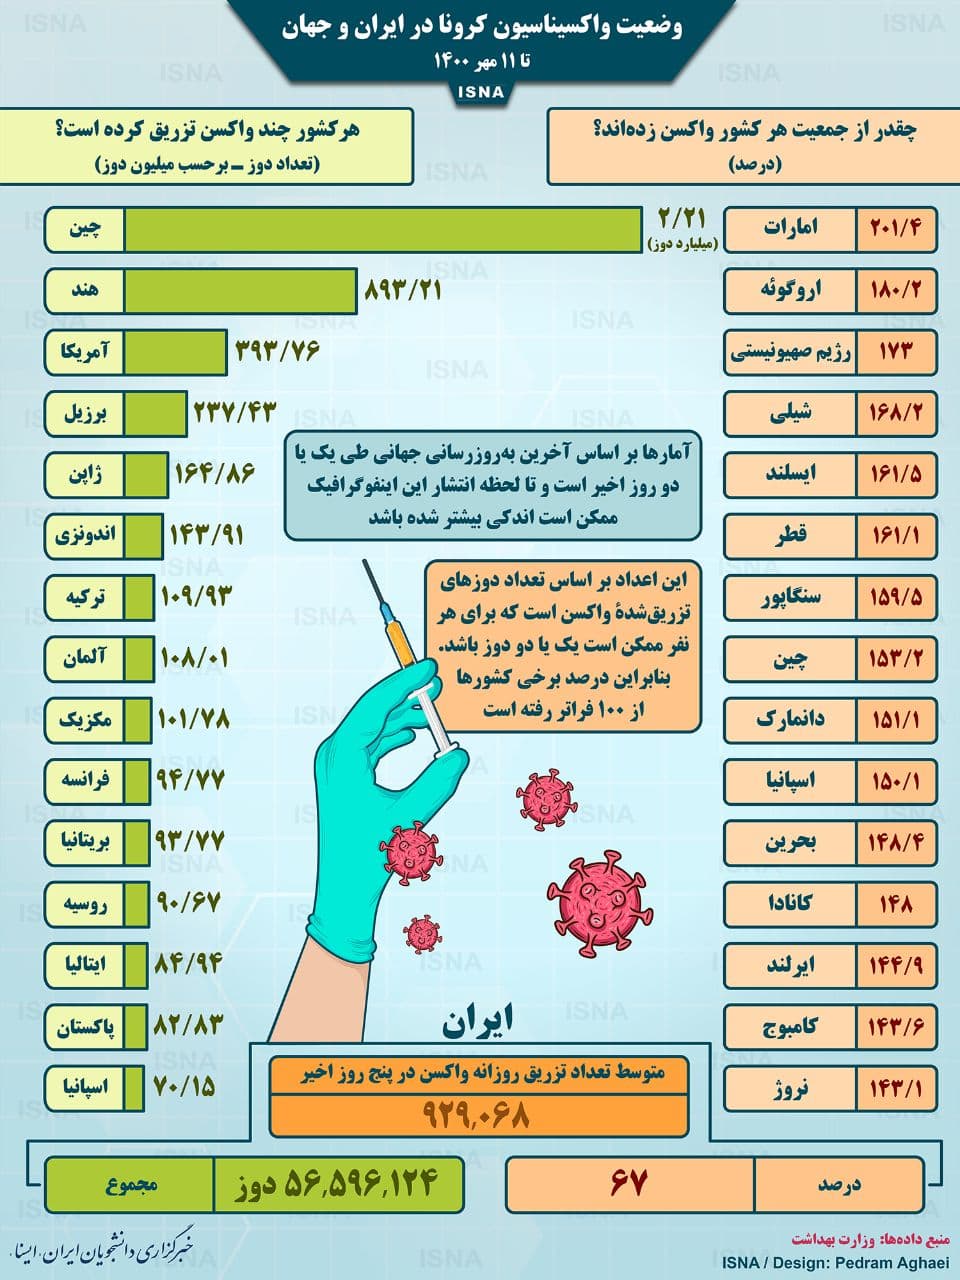 واکسیناسیون کرونا در ایران و جهان تا 11 مهر (اینفوگرافیک)